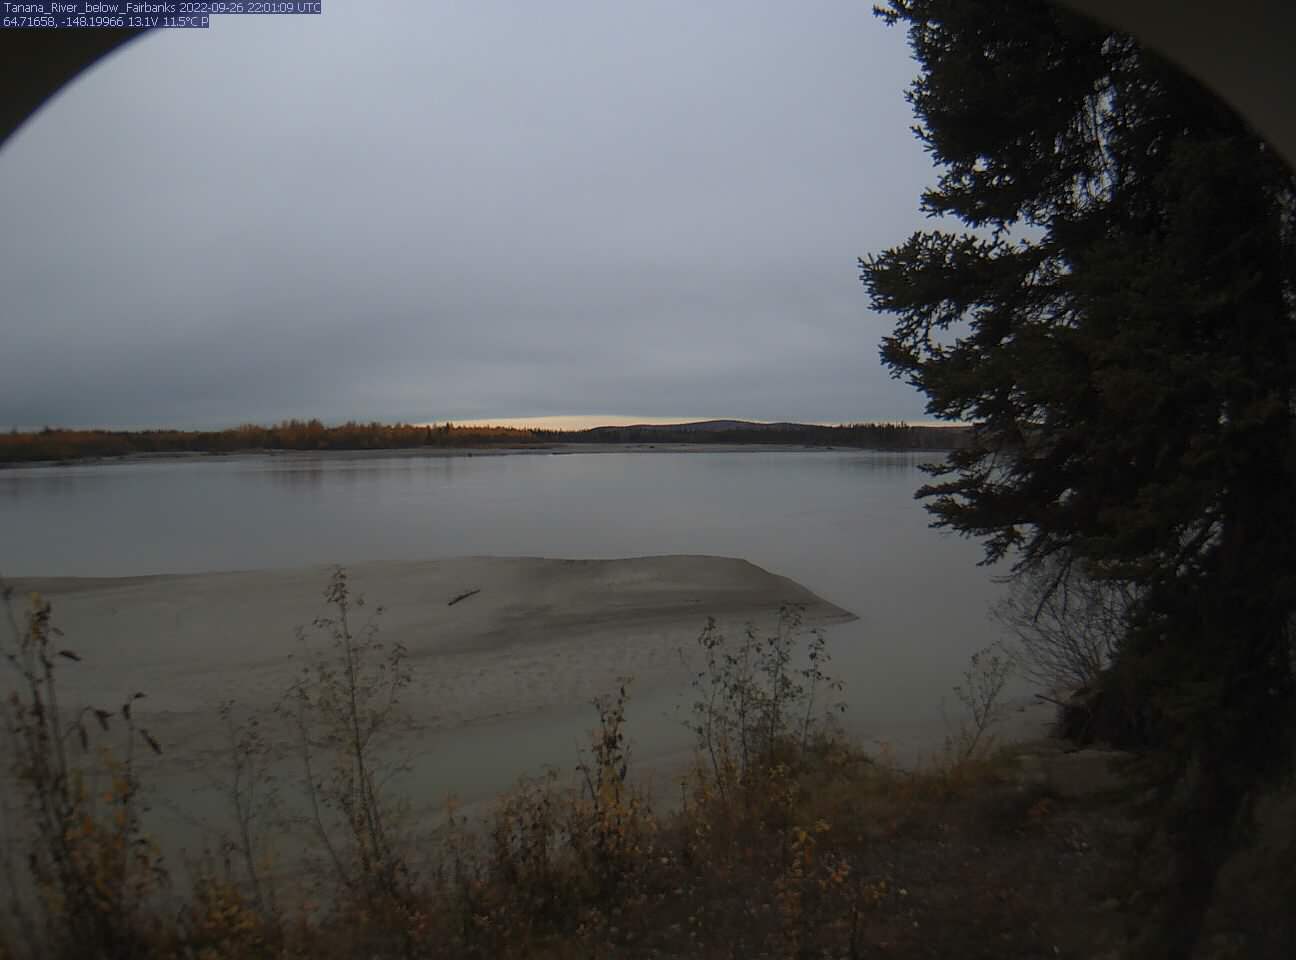 Tanana_River_below_Fairbanks_20220926220111.jpg